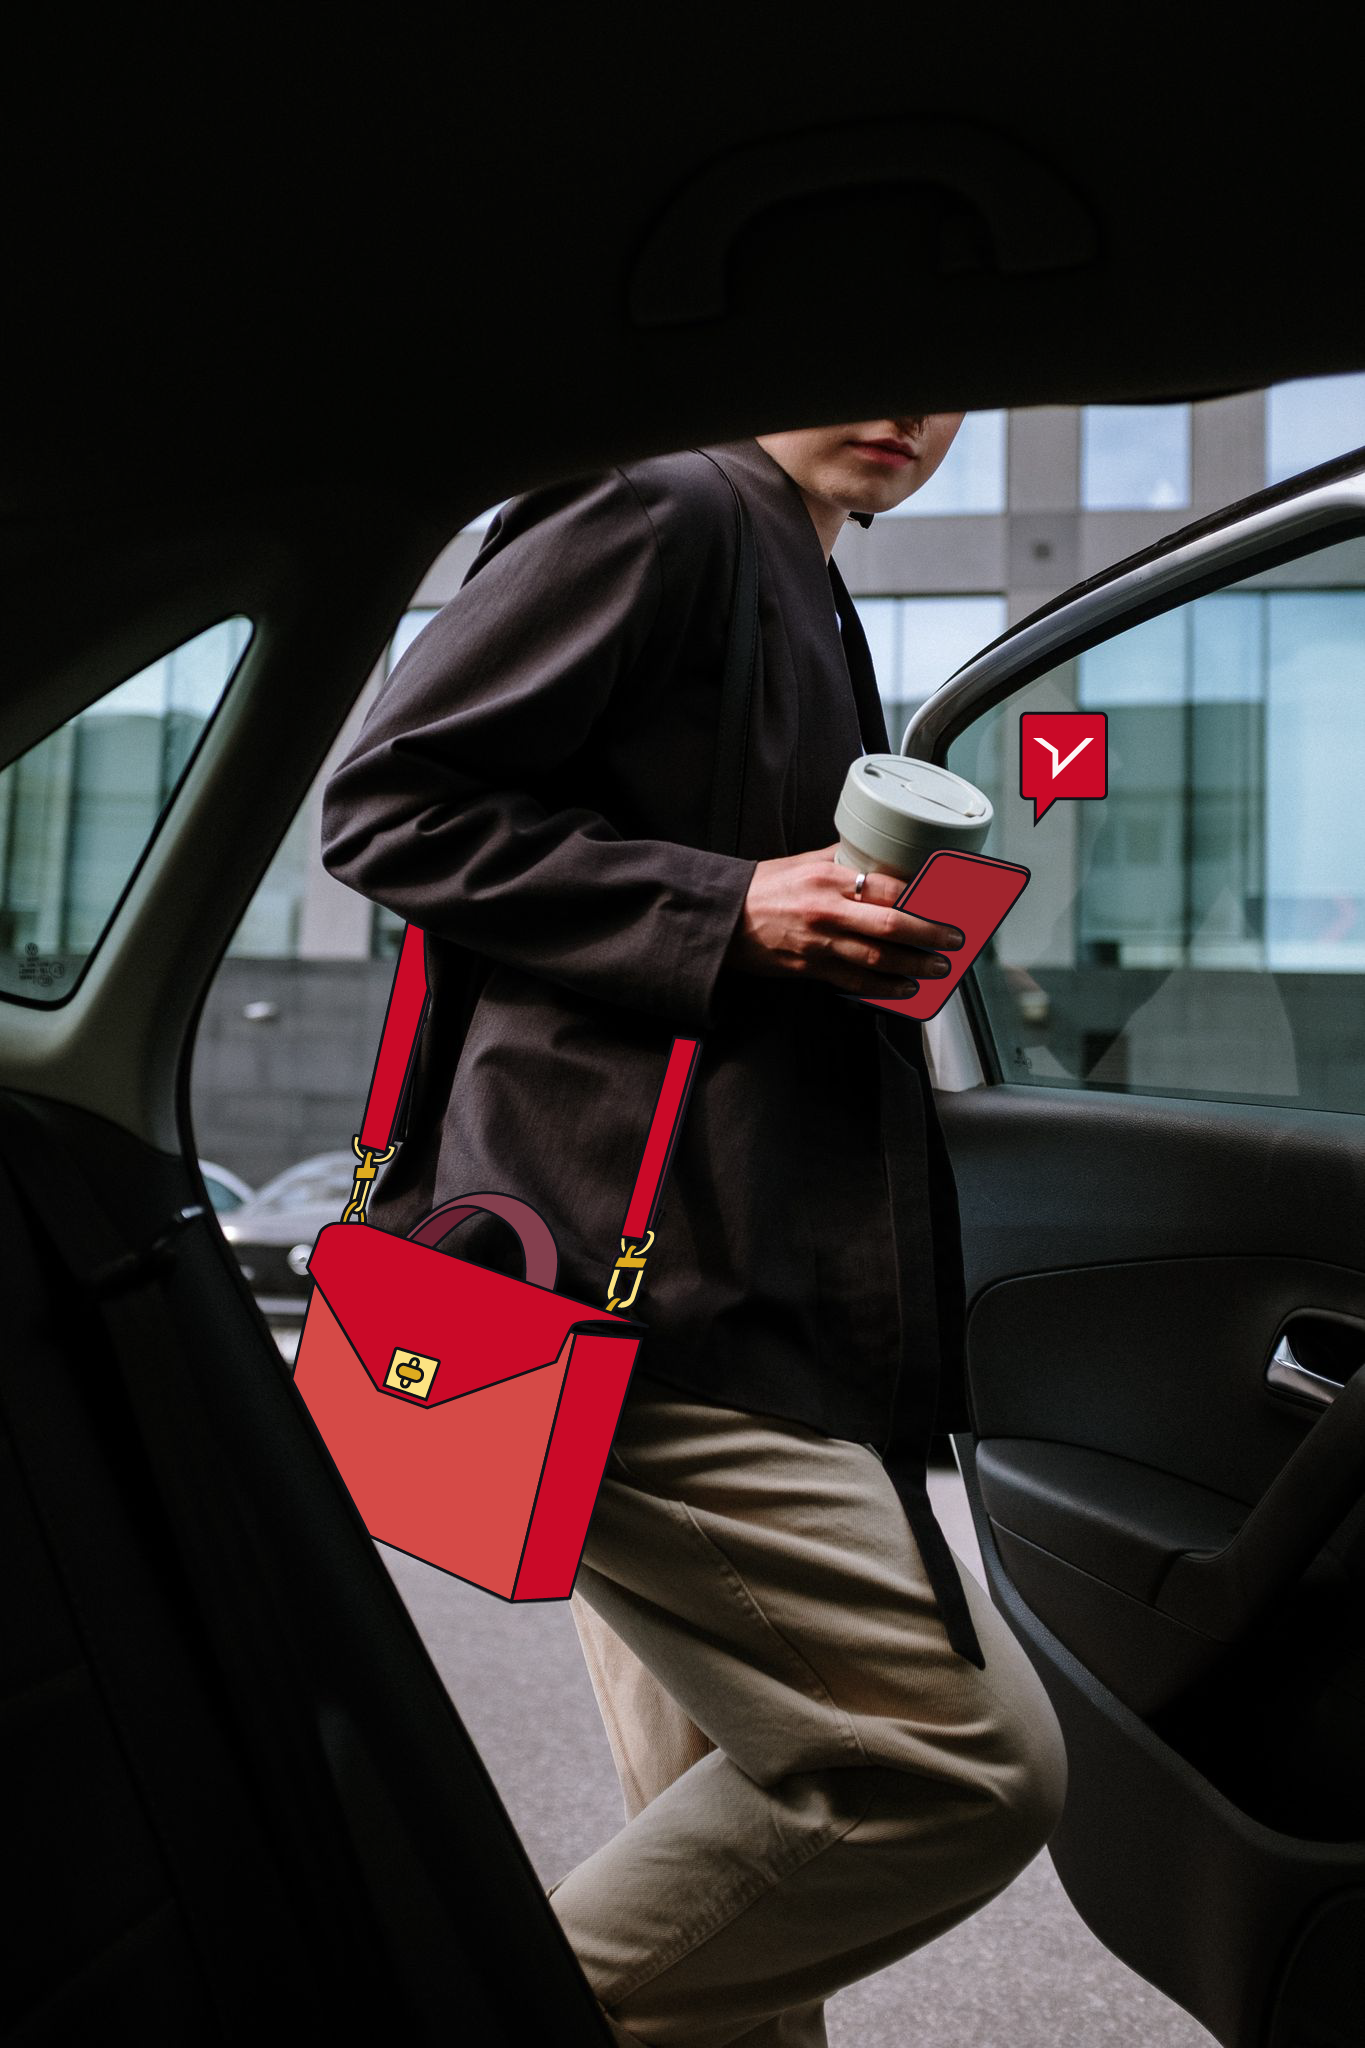 Una mujer trabajadora sube a un coche con una bolsa roja, un ejemplo de transporte urbano.